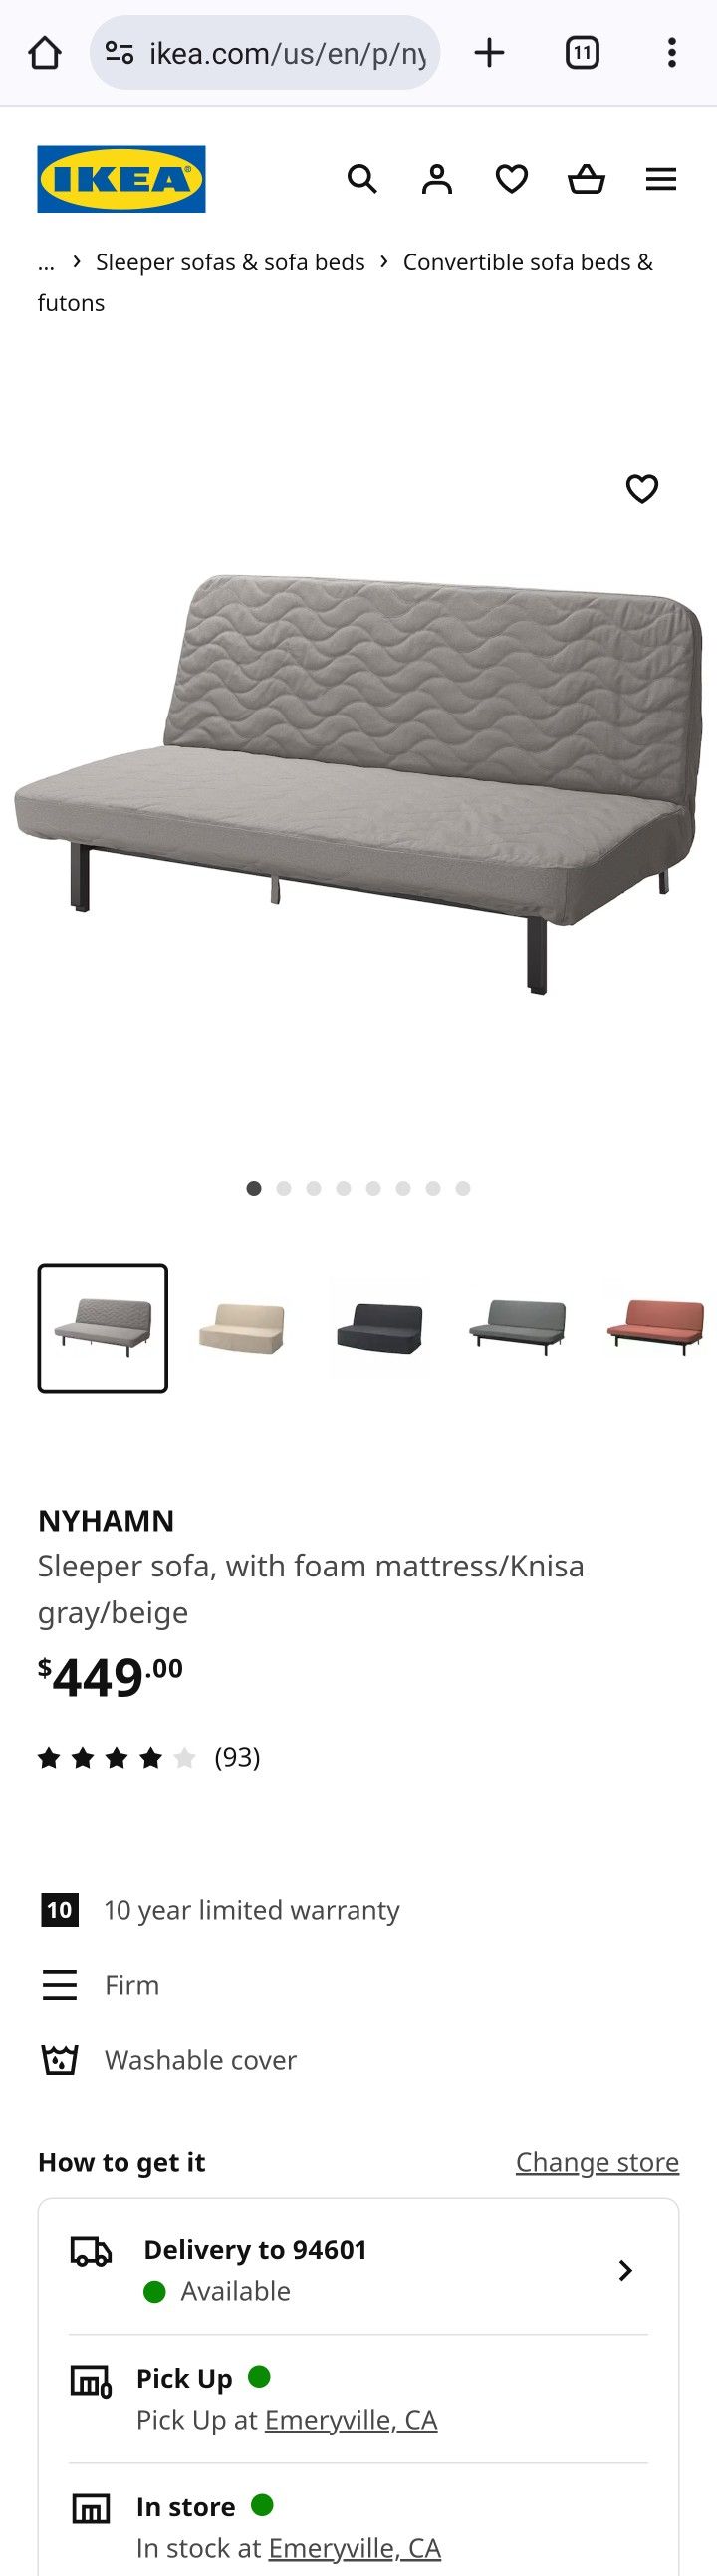 Ikea Nyhamn Sleeper Sofa Futon Bed